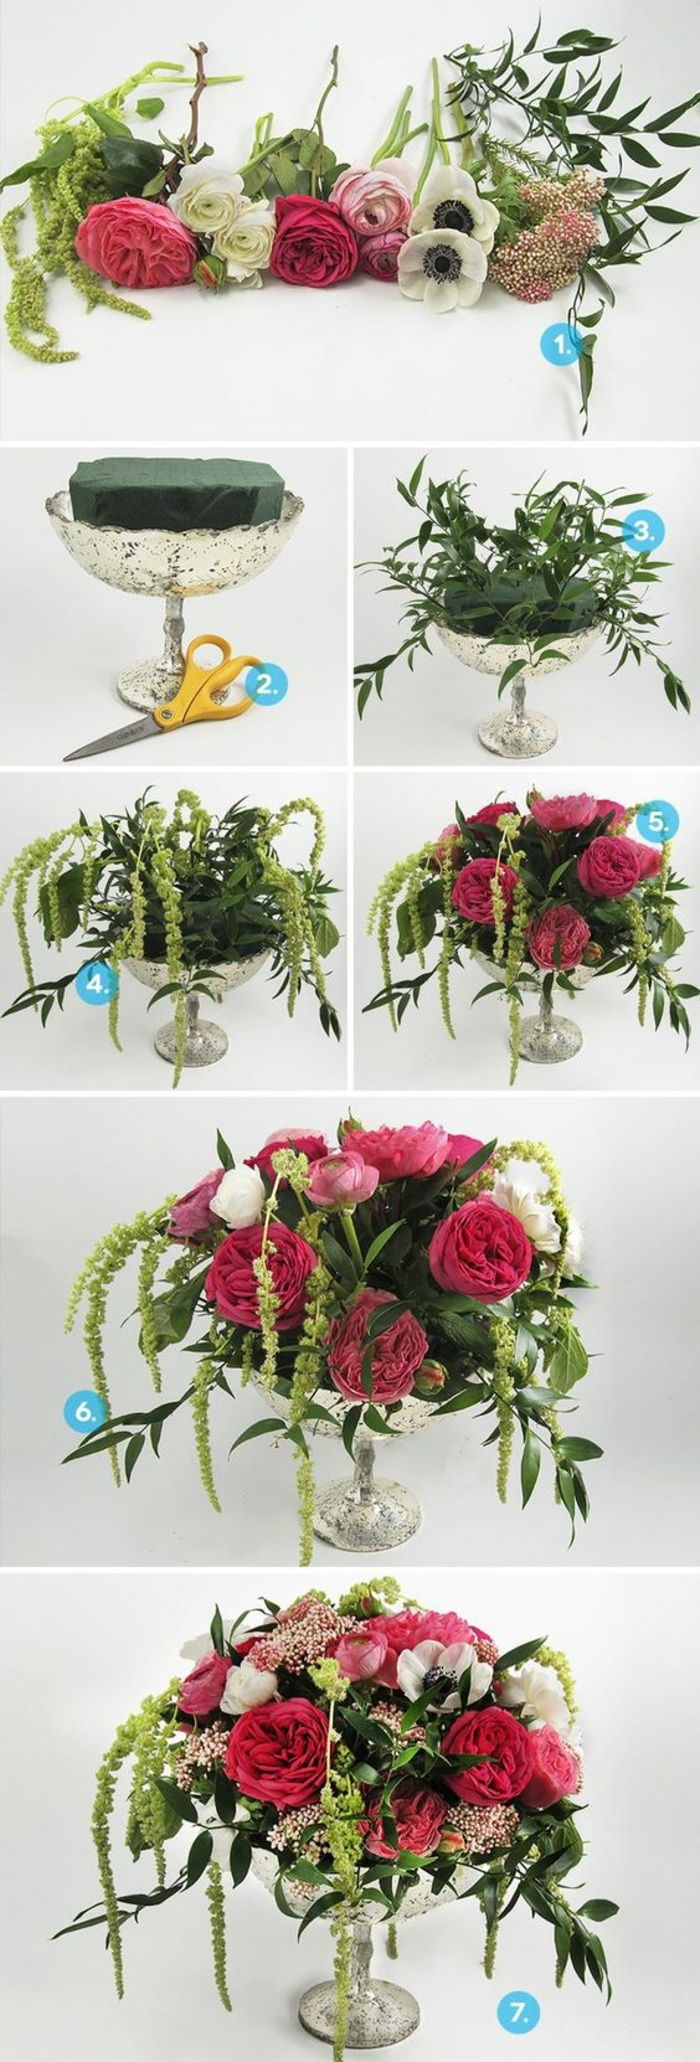 patarimai, sidabrinė vazos, kempinė su rožių, gėlių išdėstymas